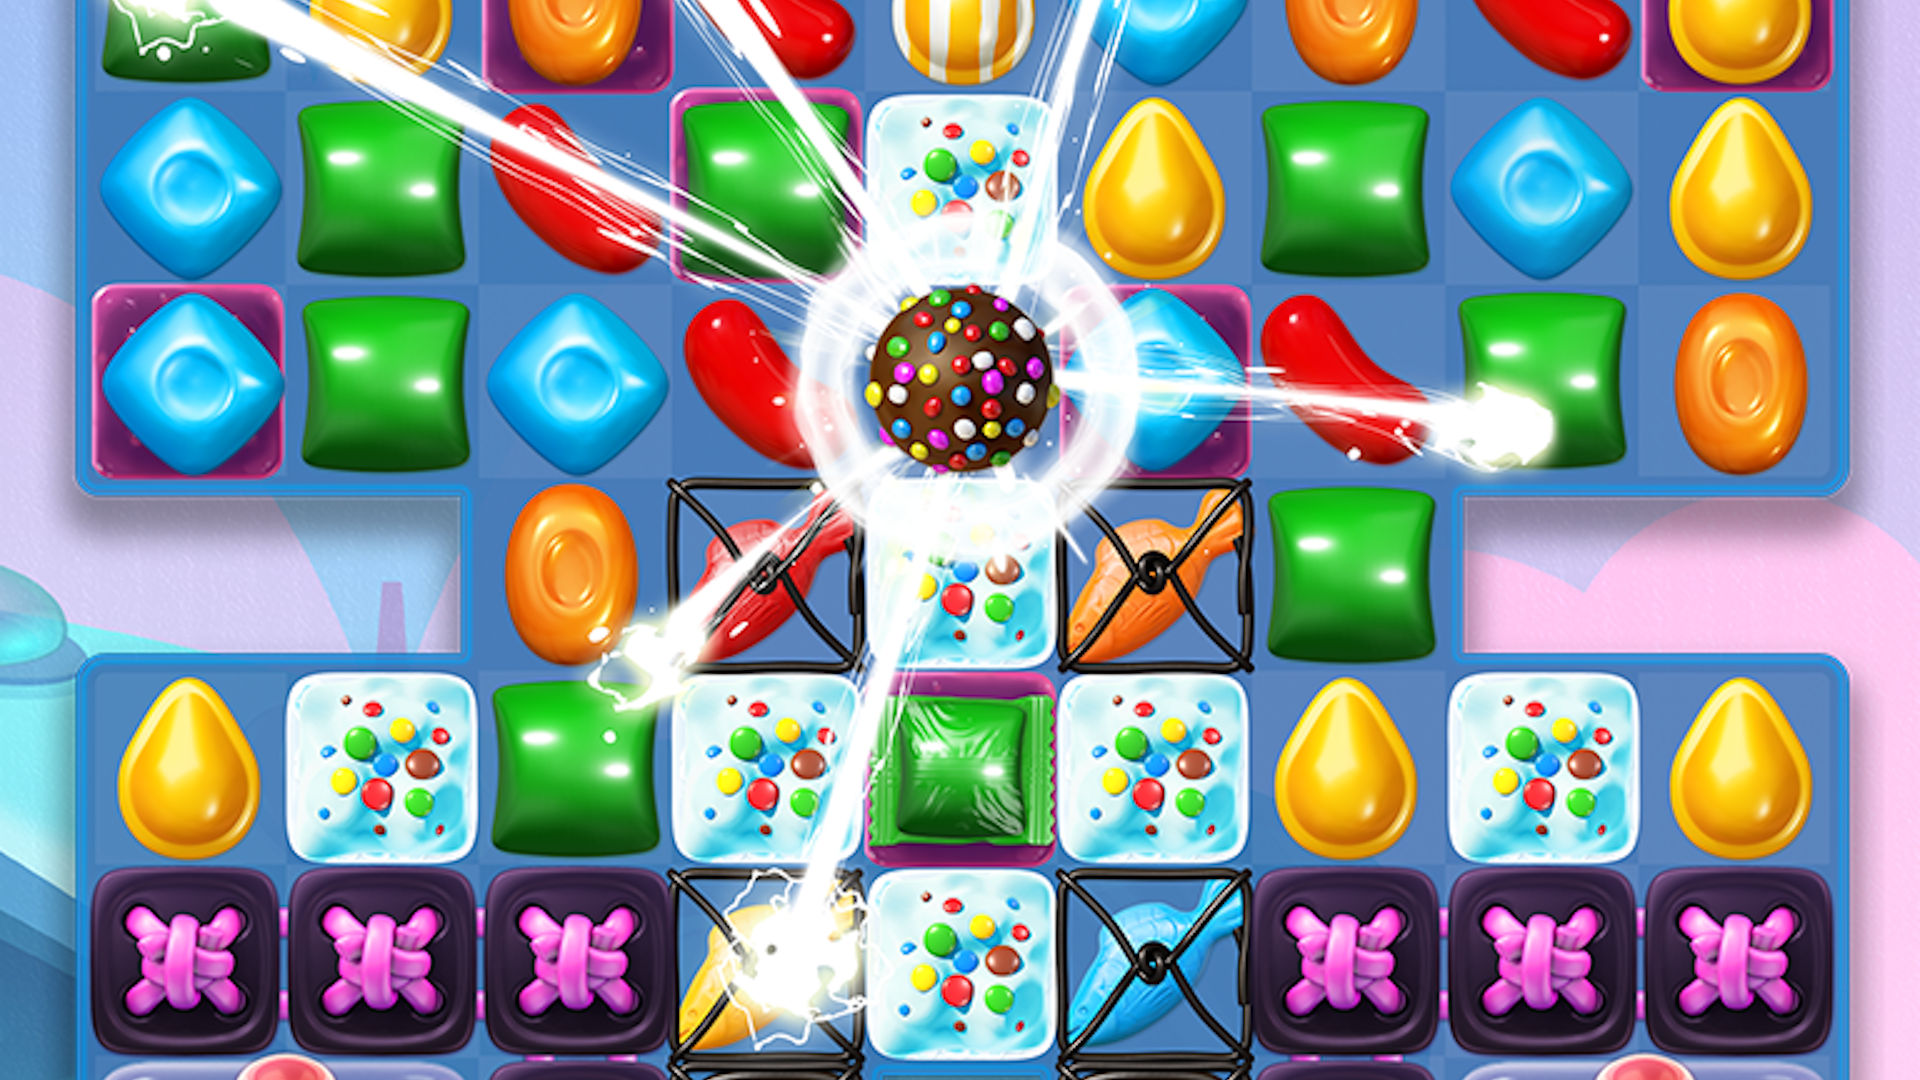 Nejlepší mobilní logické hry: Candy Crush Soda Saga. Obrázek ukazuje různé bonbóny